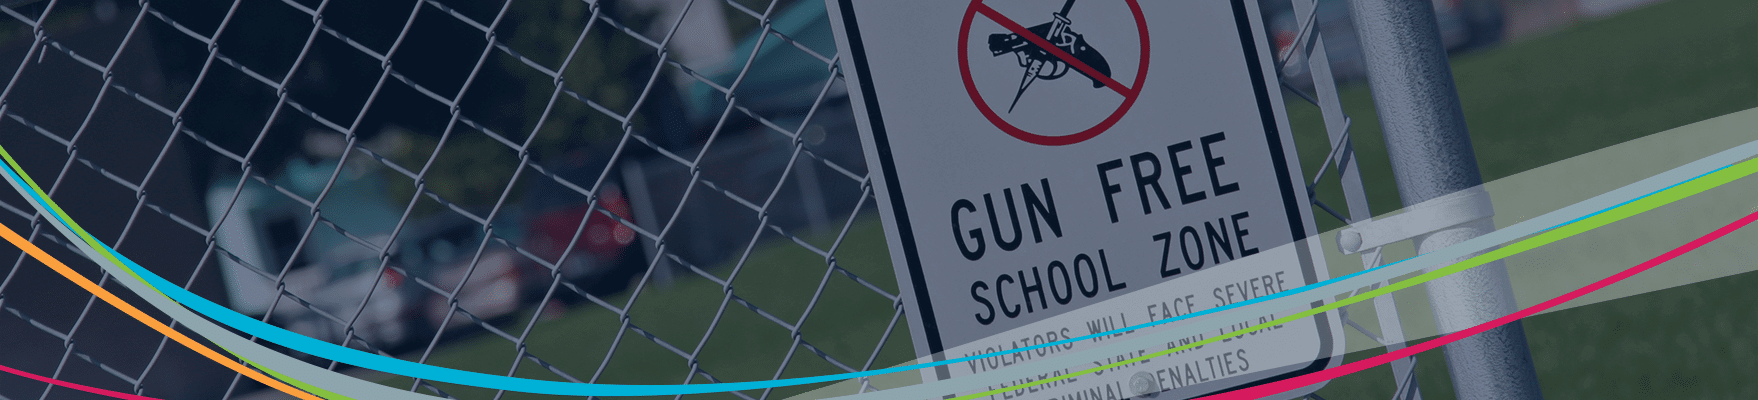 علامة منطقة خالية من الأسلحة على السياج، رأس منع العنف في المدرسة